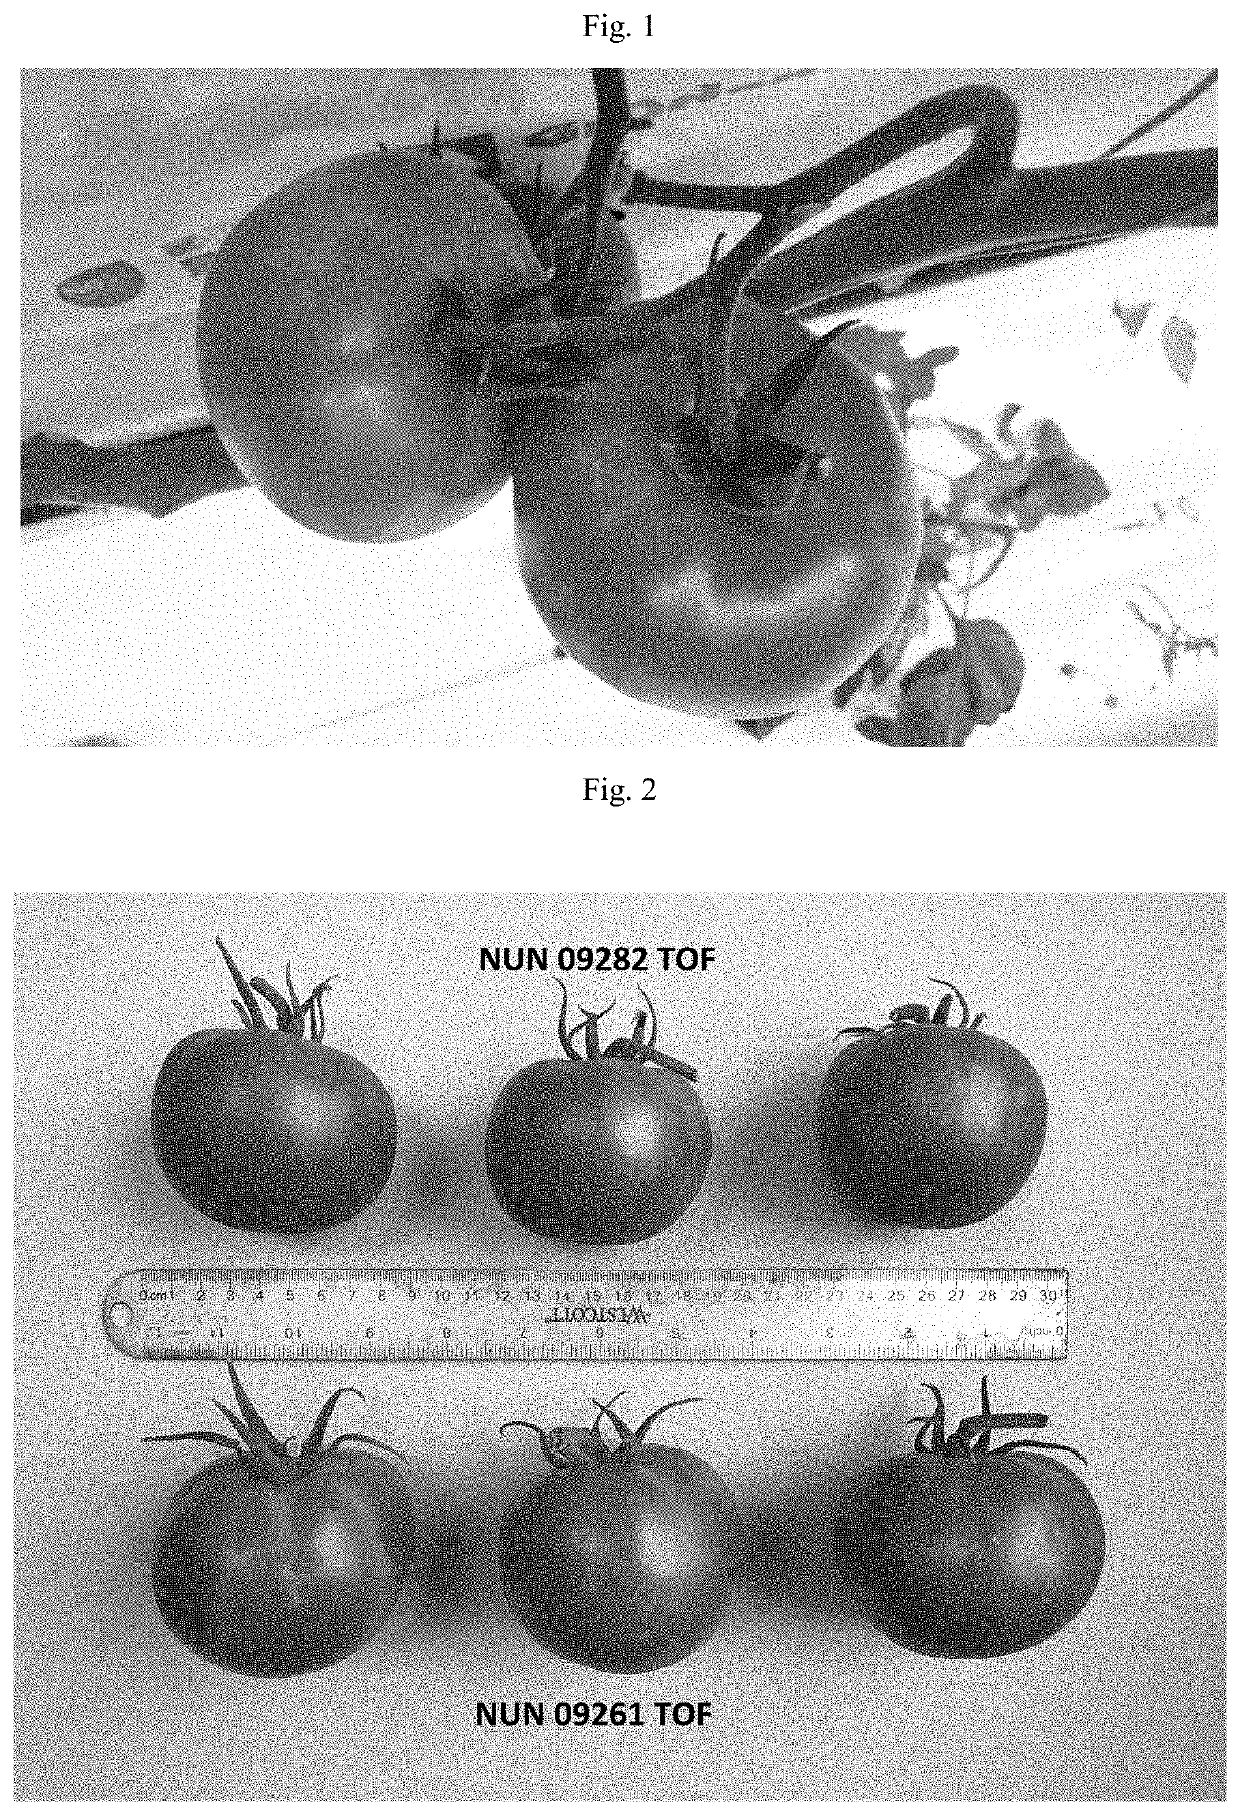 Tomato variety nun 09282 tof